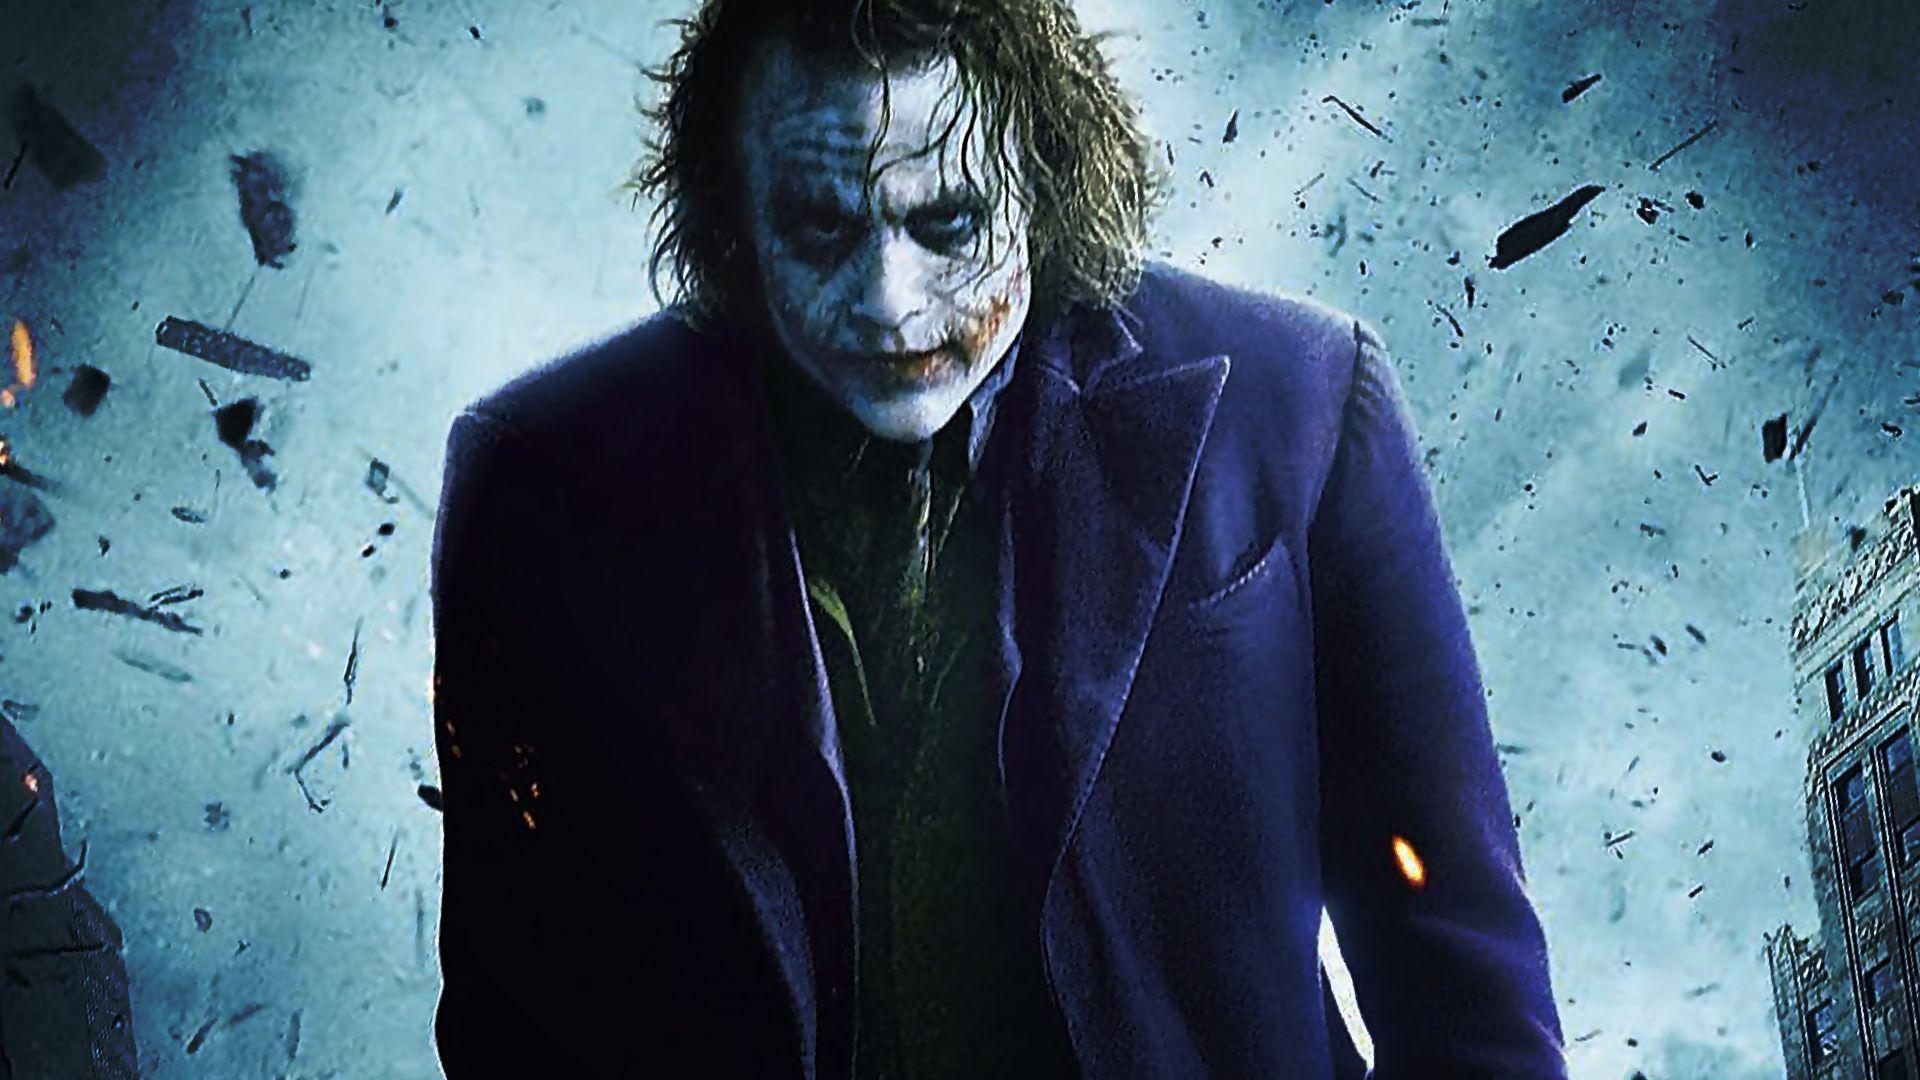 The Joker The Dark Knight Wallpaper 1920×1080 The Joker Dark Knight